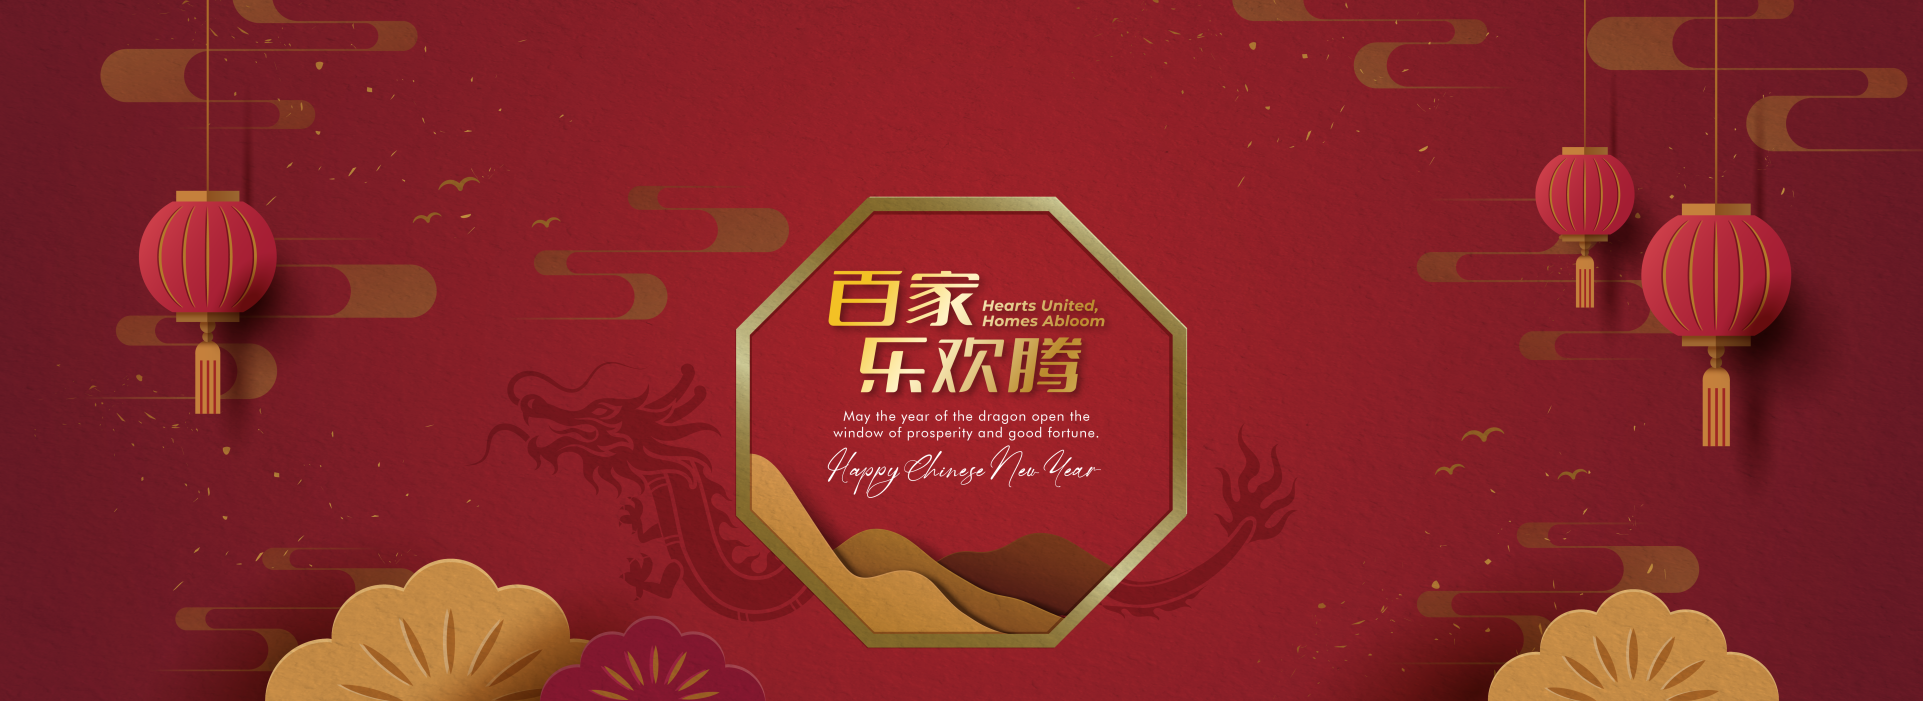 Paramount Chinese New Year greeting 